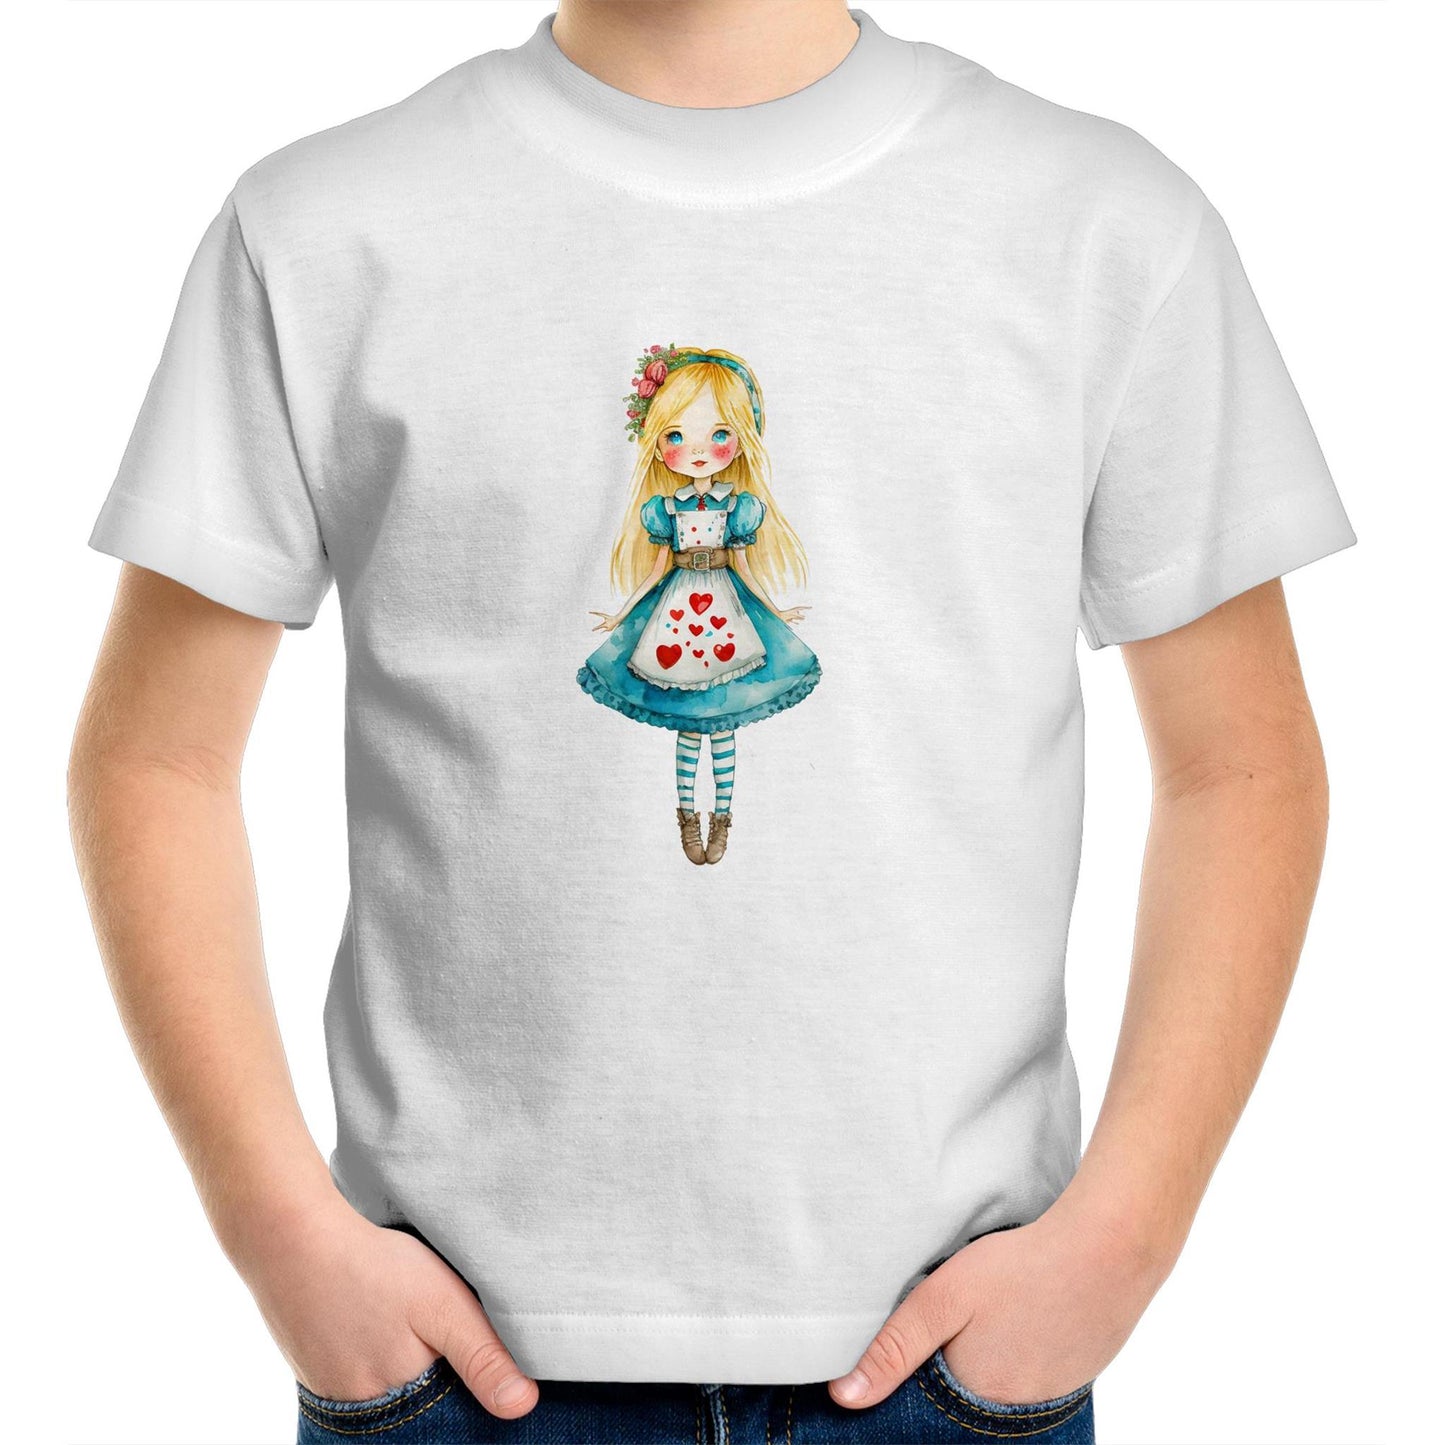 Alice in Wonderland Unisex Kids Youth Crew T-Shirt